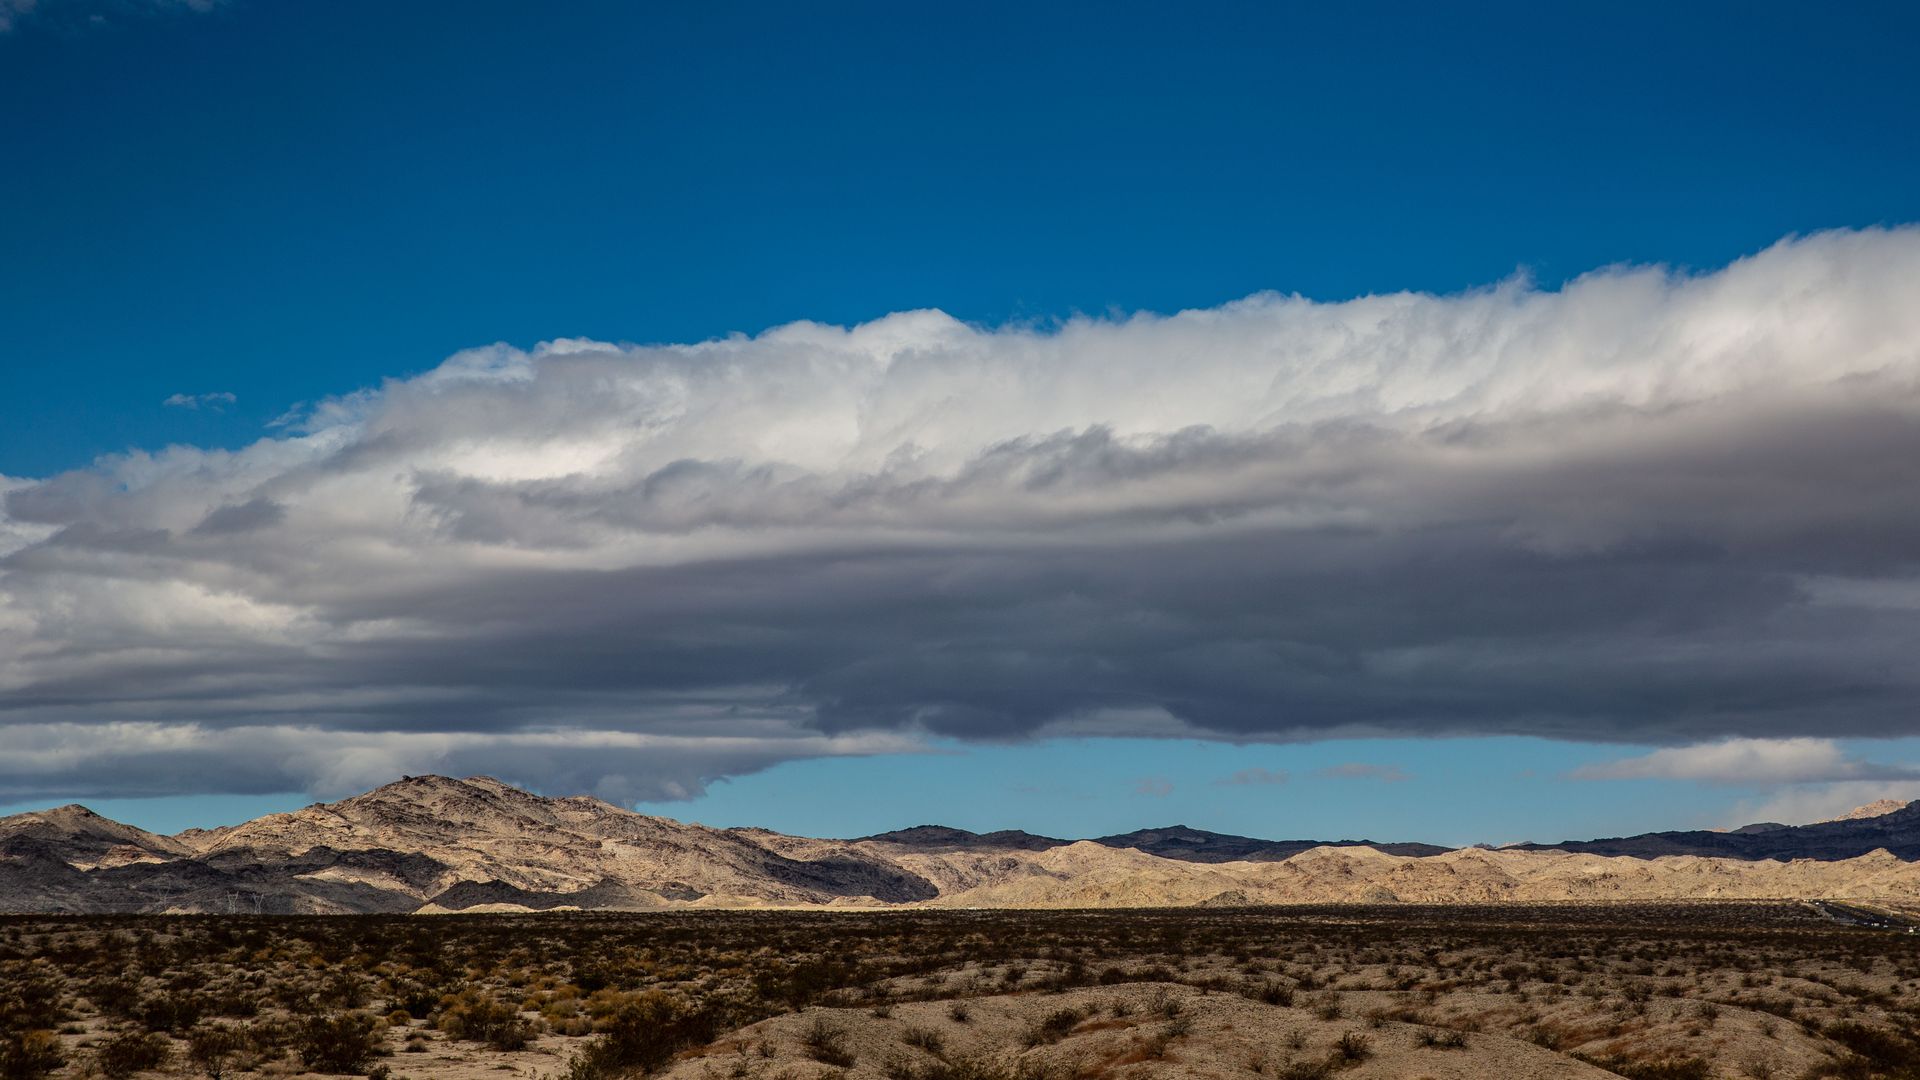 Avi Kwa Ame, or Spirit Mountain, near Laughlin, Nevada, in March 2021.